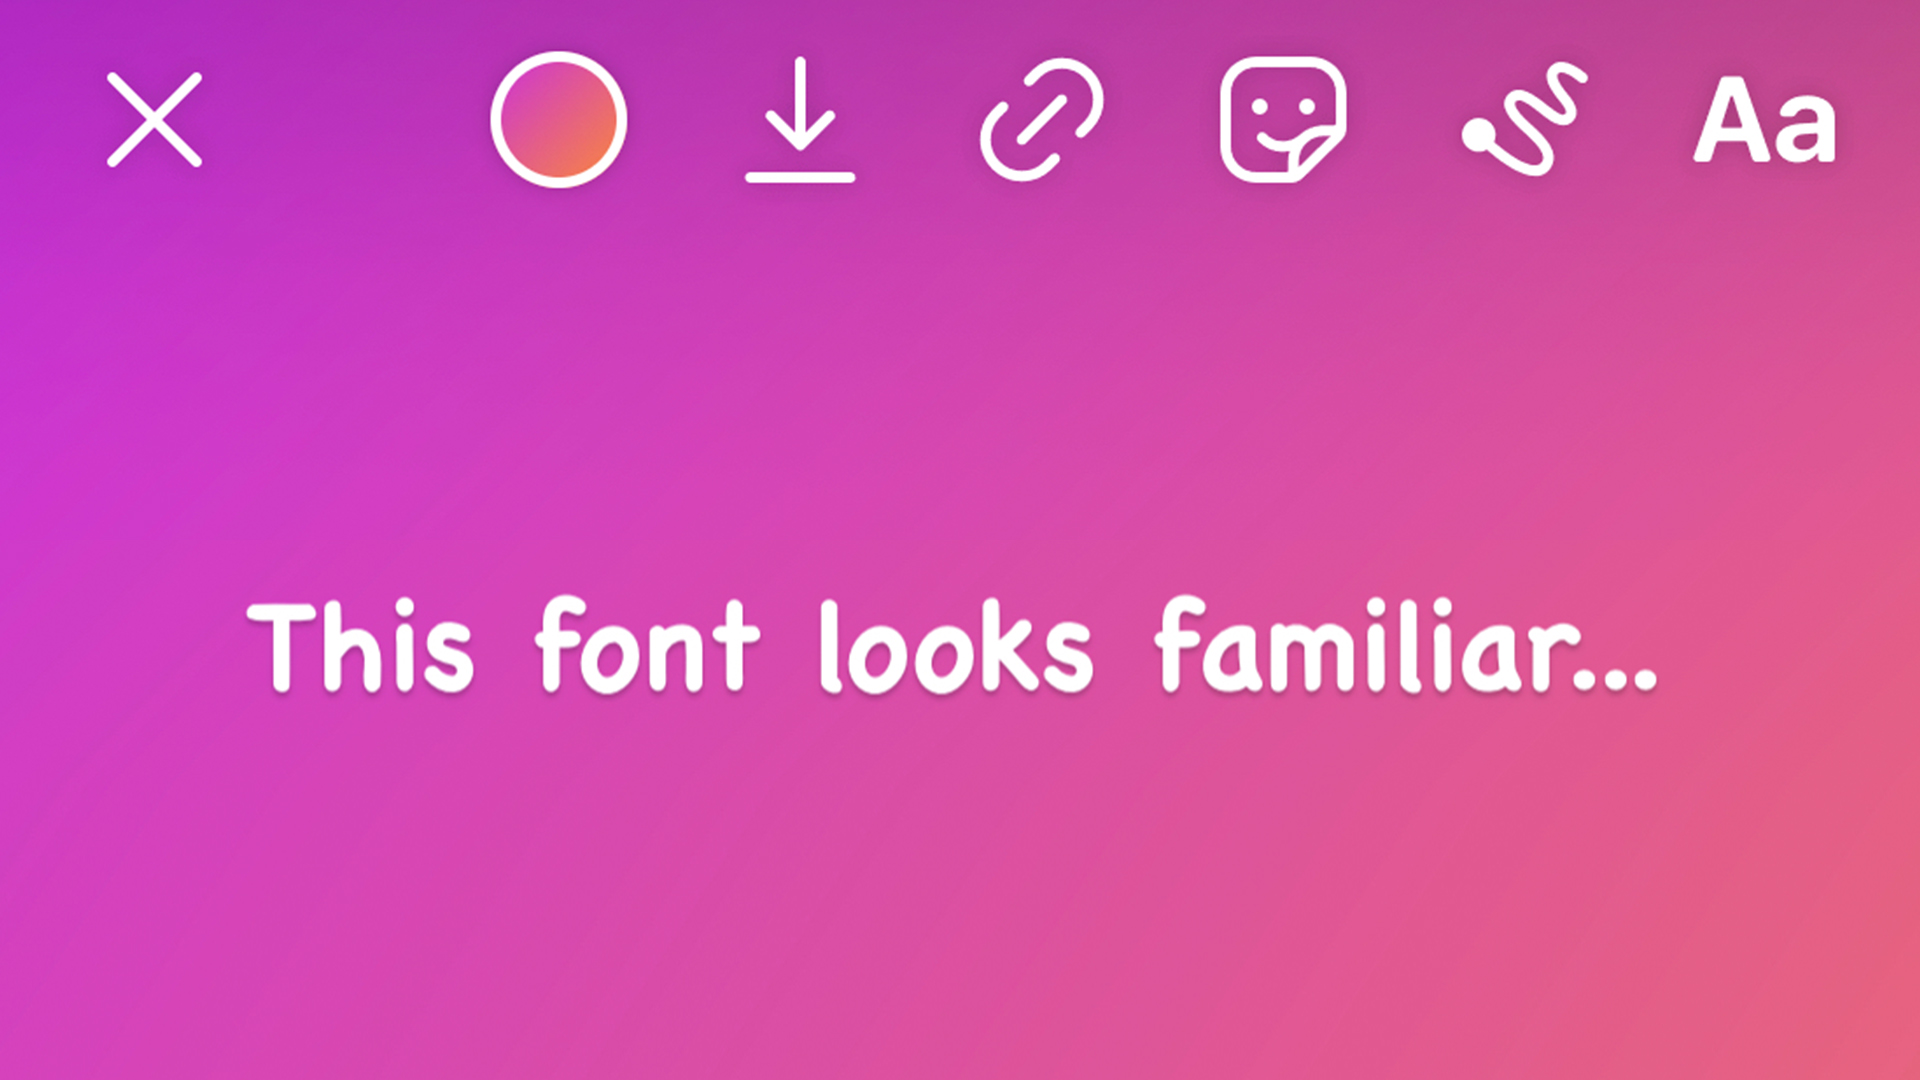 Font Comic Sans (Comic Sans font): Font Comic Sans luôn được yêu thích bởi tính độc đáo và vui nhộn của nó. Nếu bạn đang muốn tạo ra những thiết kế độc đáo và cá tính, hãy dùng font này. Comic Sans đem đến một điểm nhấn cho thiết kế của bạn với sự khác biệt về kiểu chữ và không gian đối với các font thông thường.